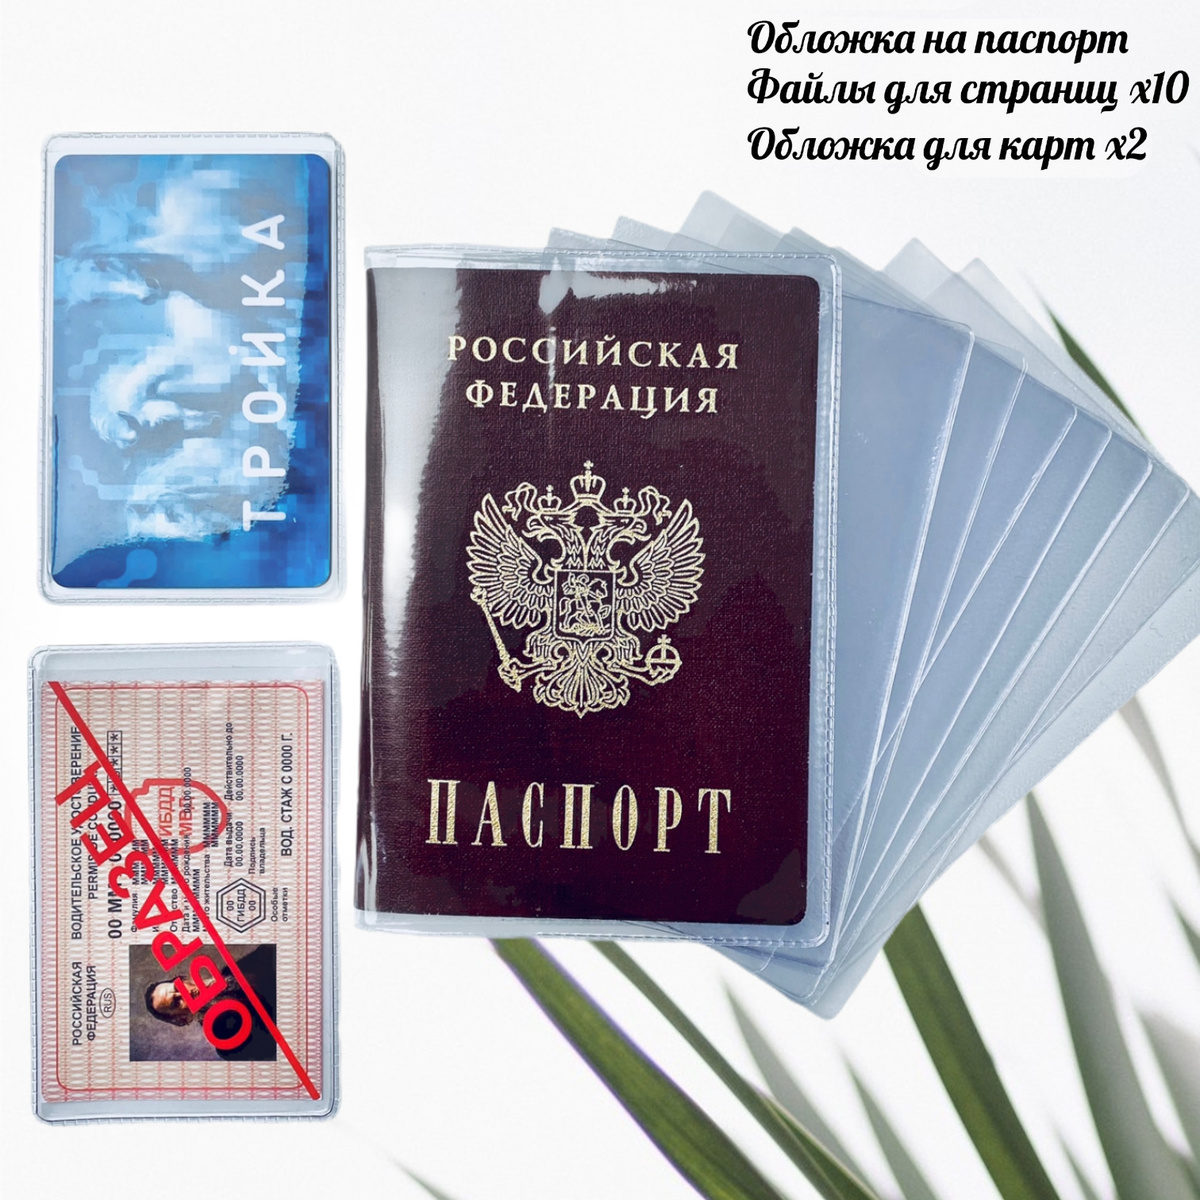 Обложка На Паспорт С Фото